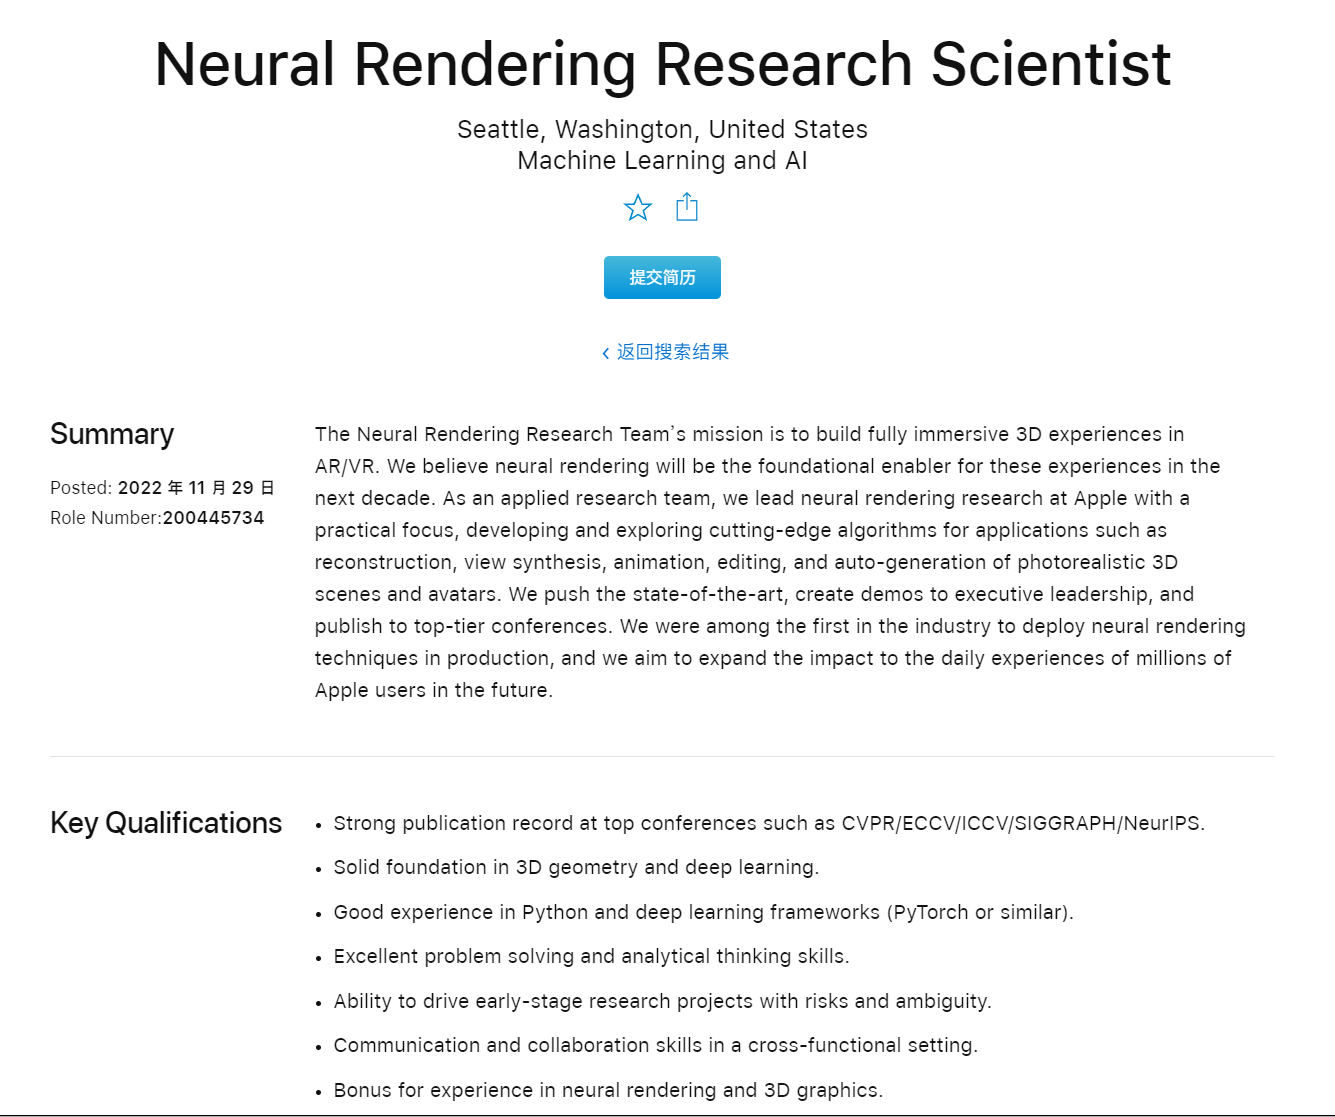 苹果正招募神经渲染研究科学家 旨在为AR/VR产品打造沉浸式体验